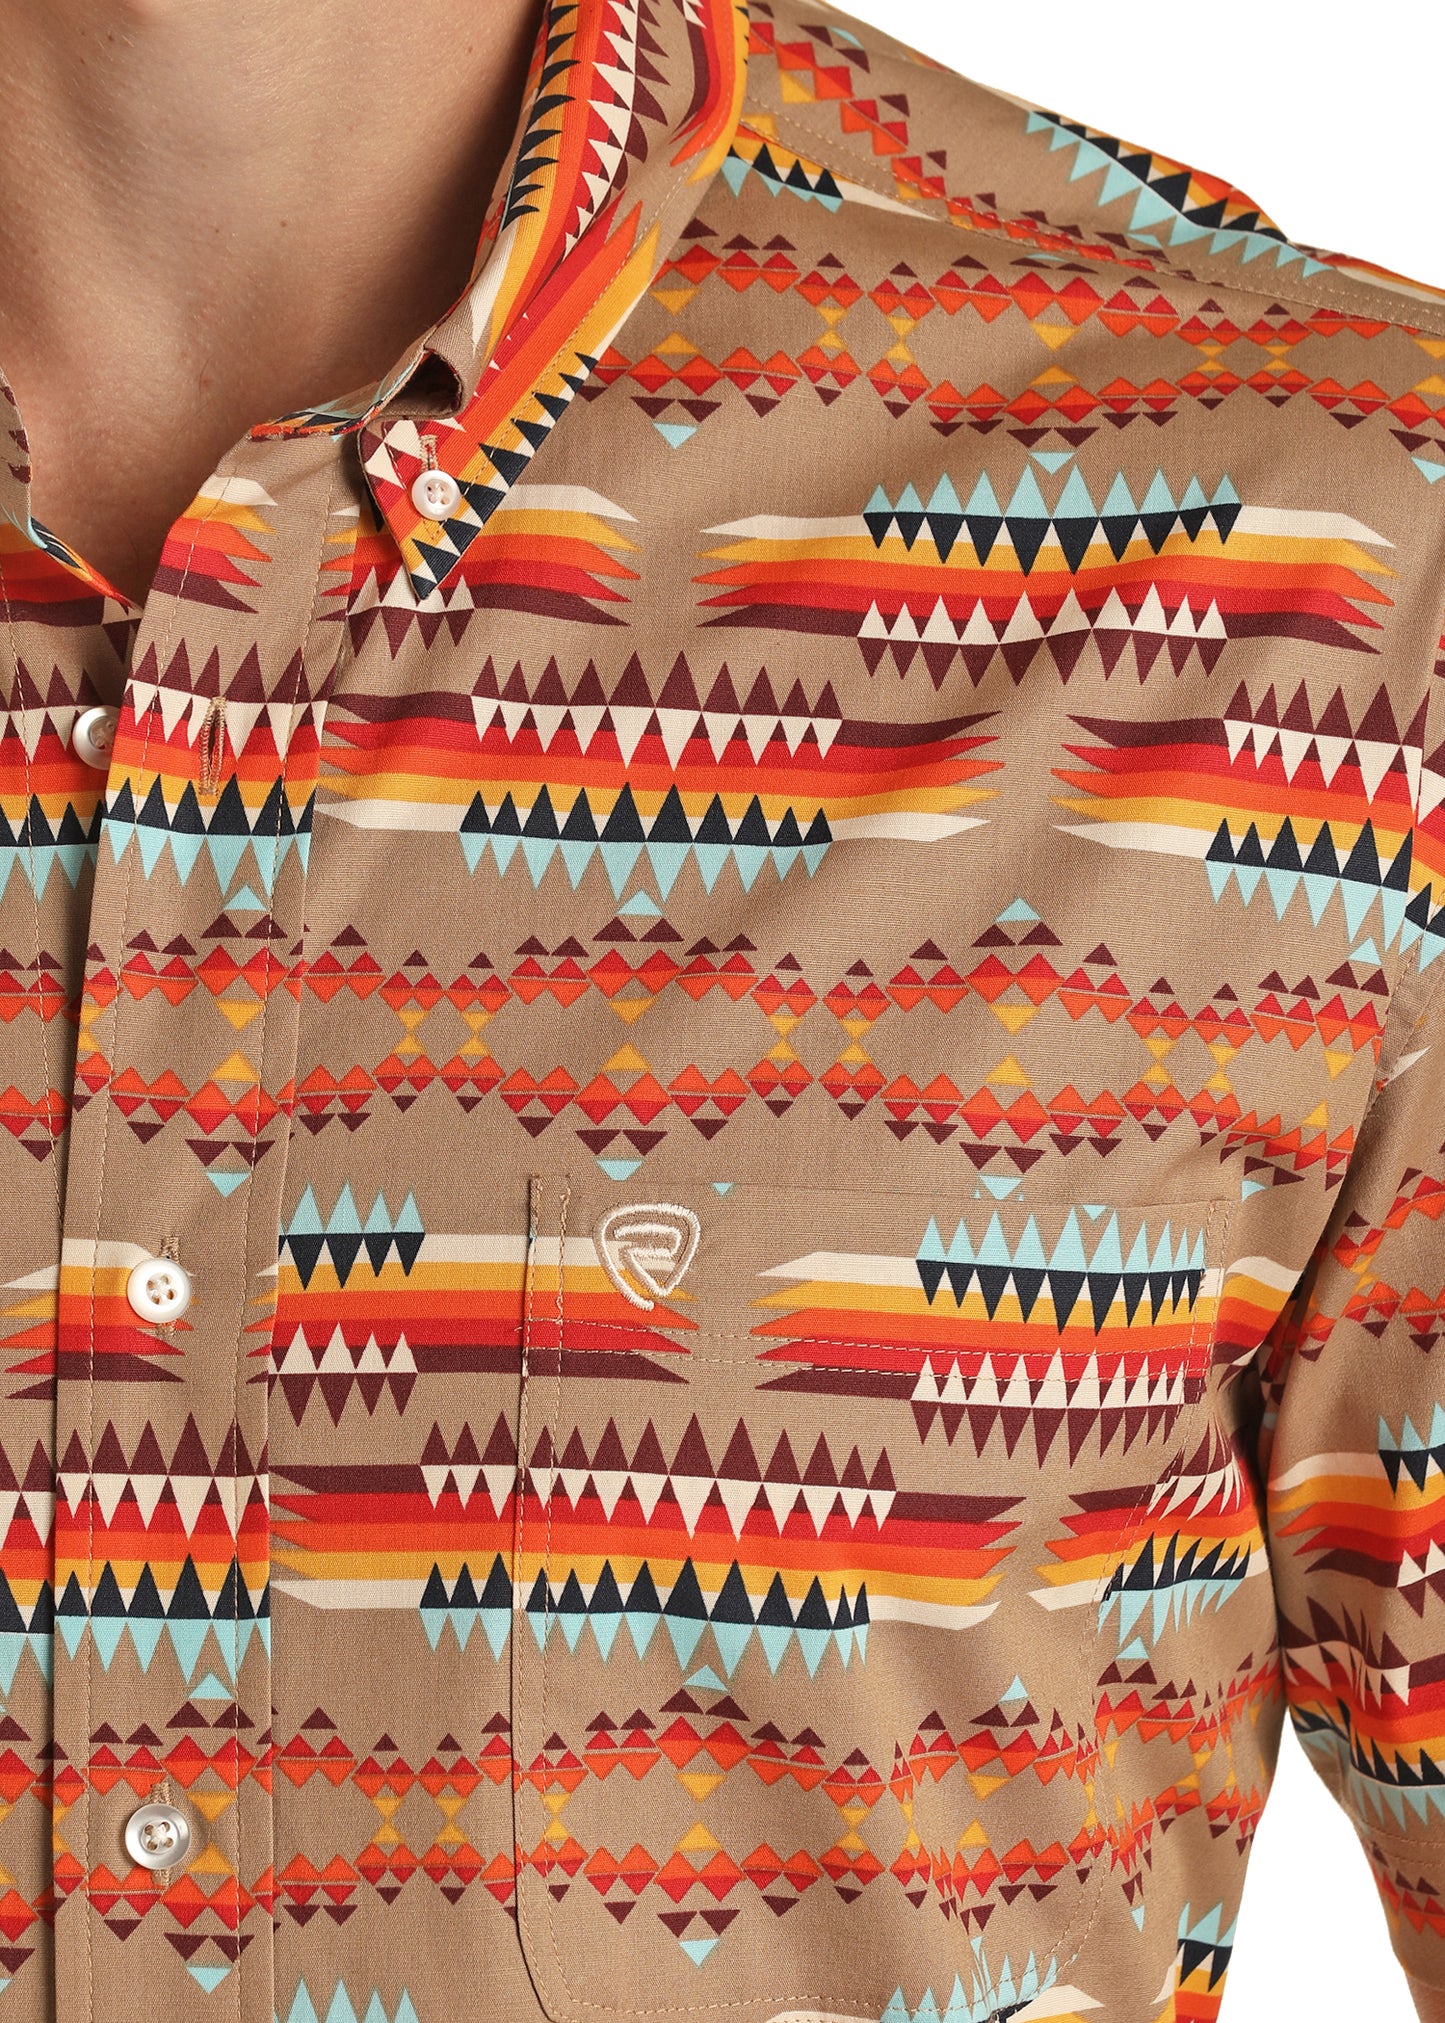 Rock & Roll Denim Men's Classic Fit Aztec Woven Short Sleeve Button Shirt Tan